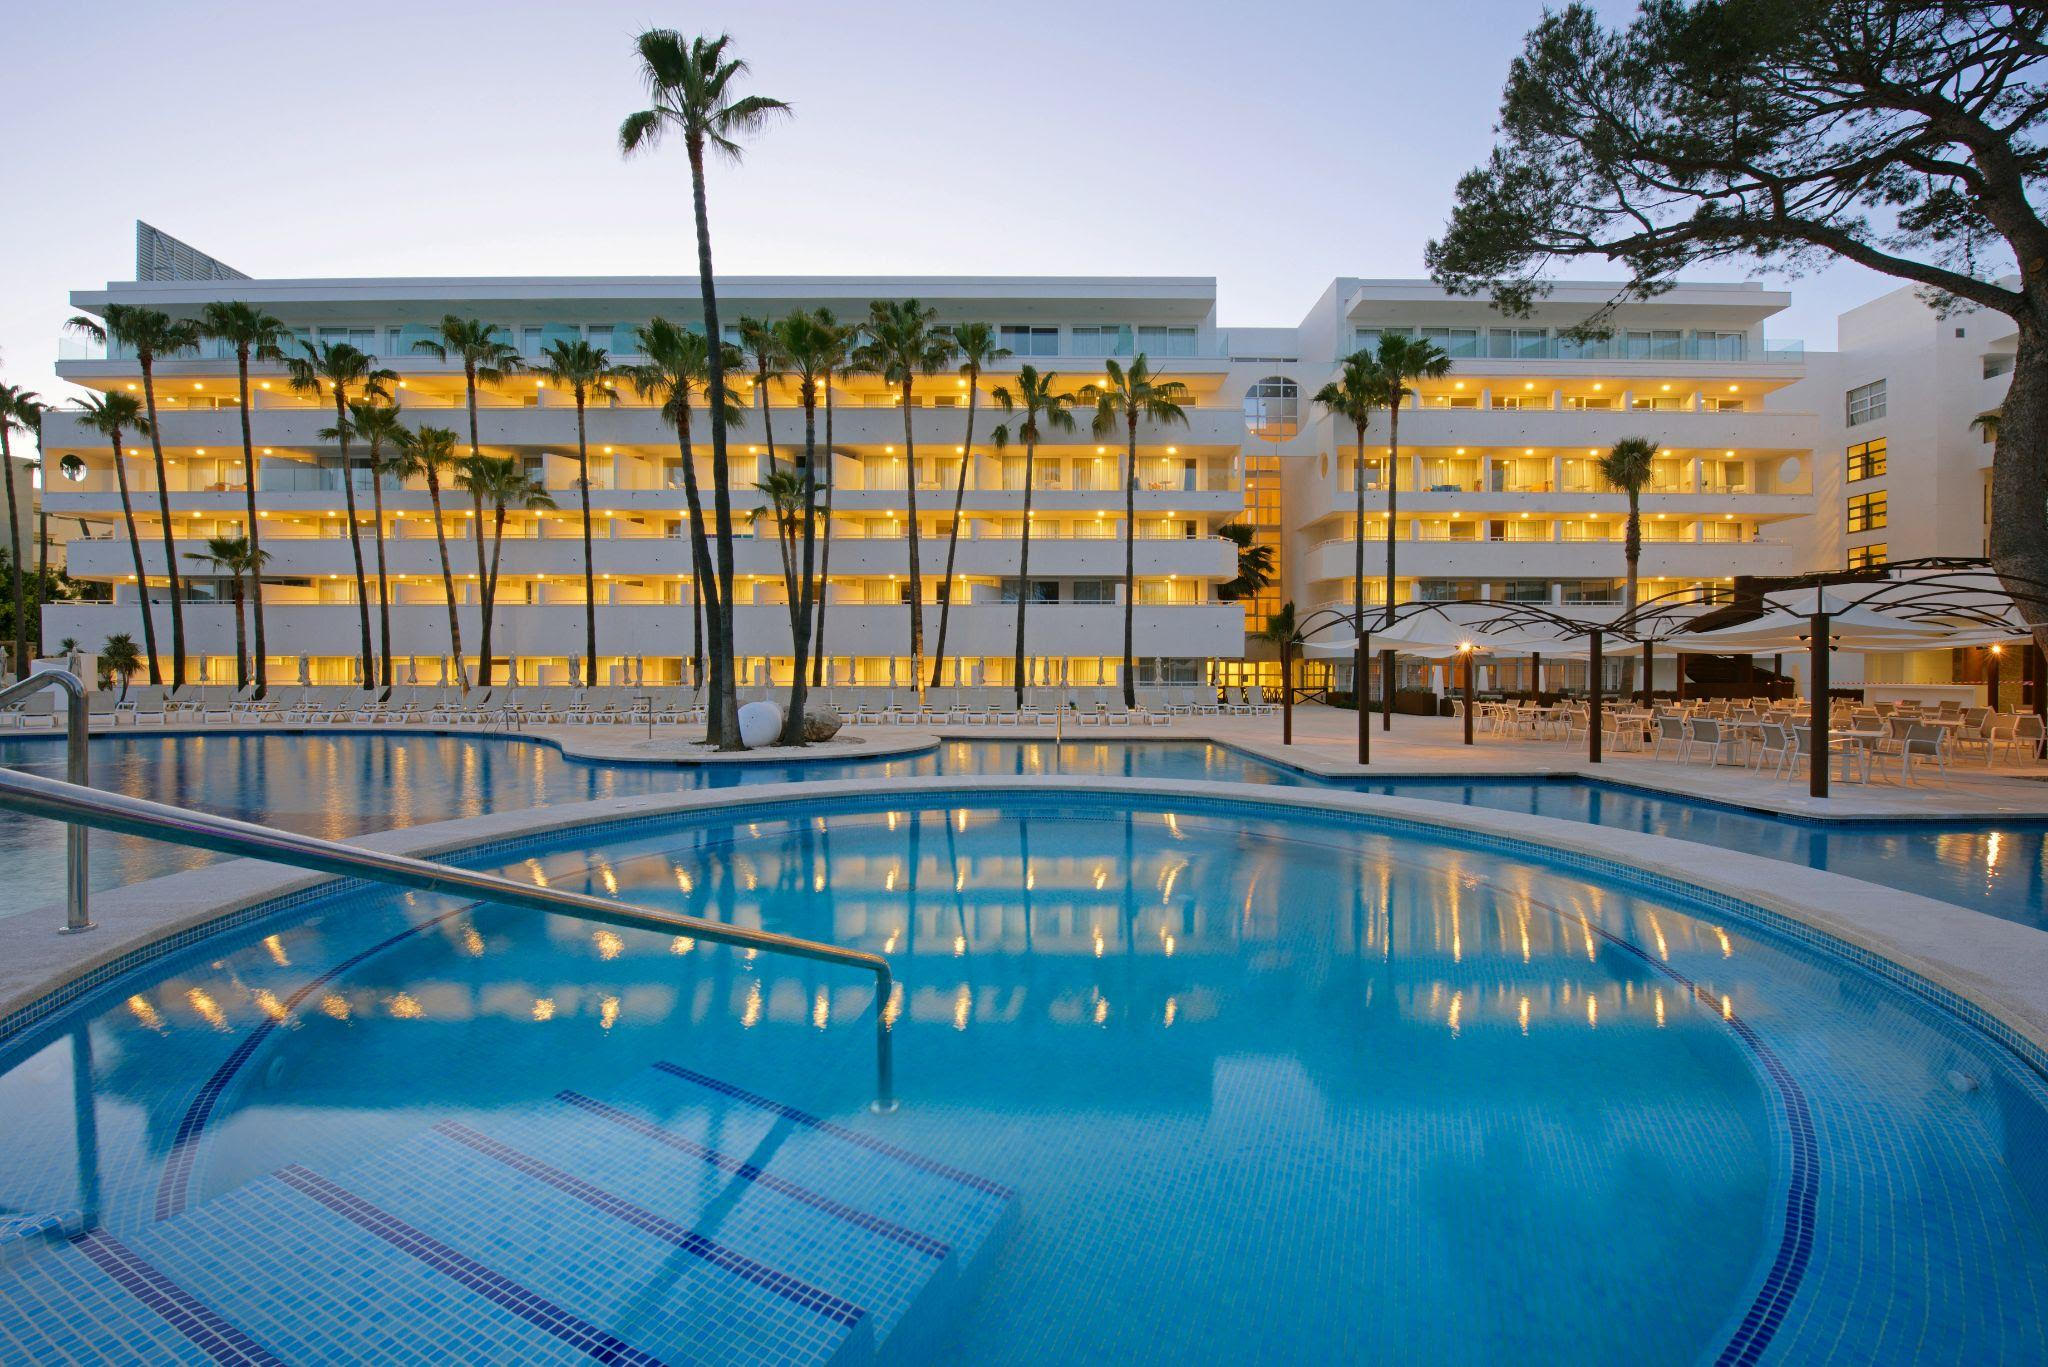 Abre en Mallorca el primer hotel 100% eléctrico de iberostar en España con energía libre de emisiones